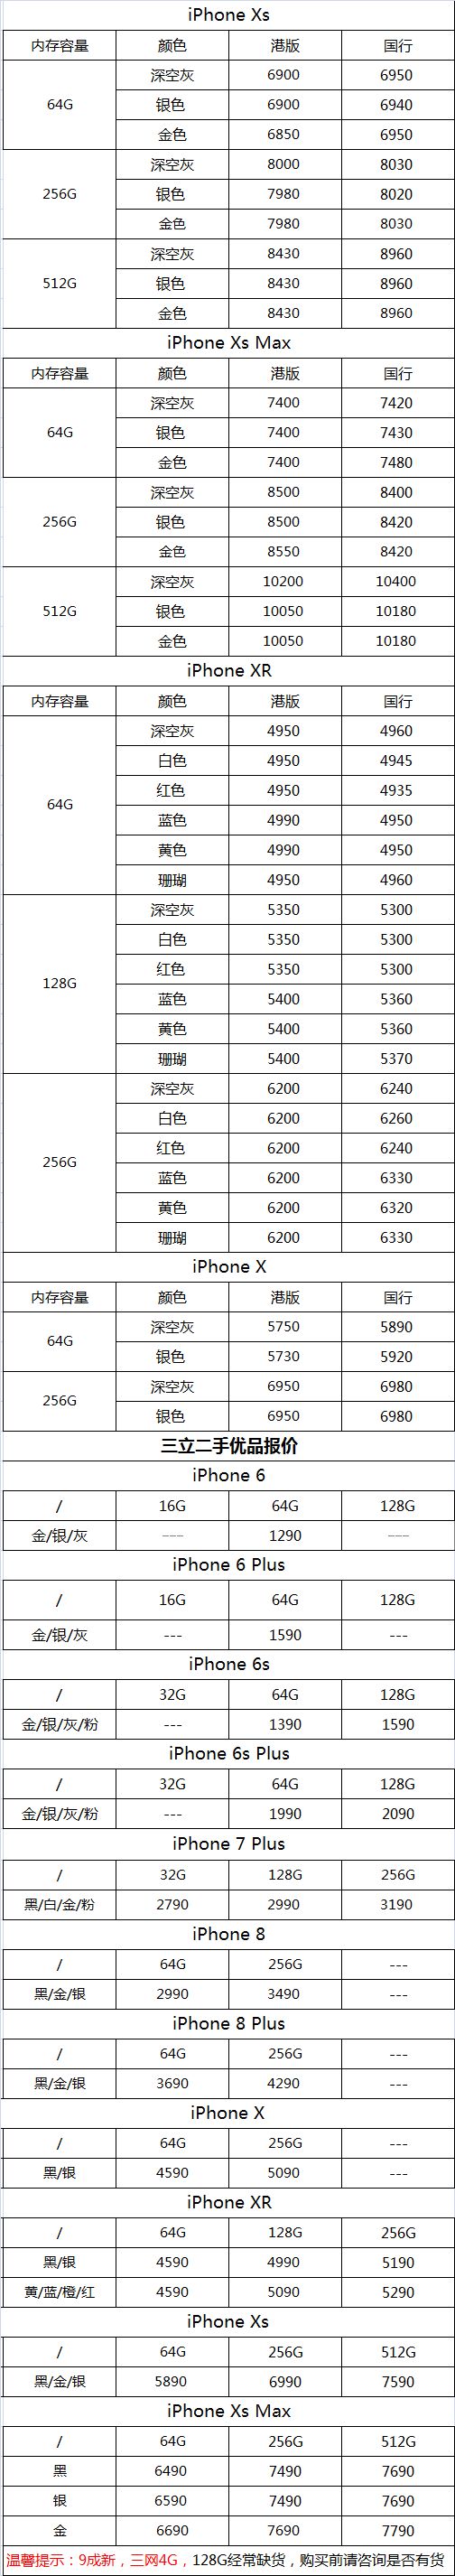 二手机报价,此报价可以视为友情价,如果您购买的手机远远低于这个价格